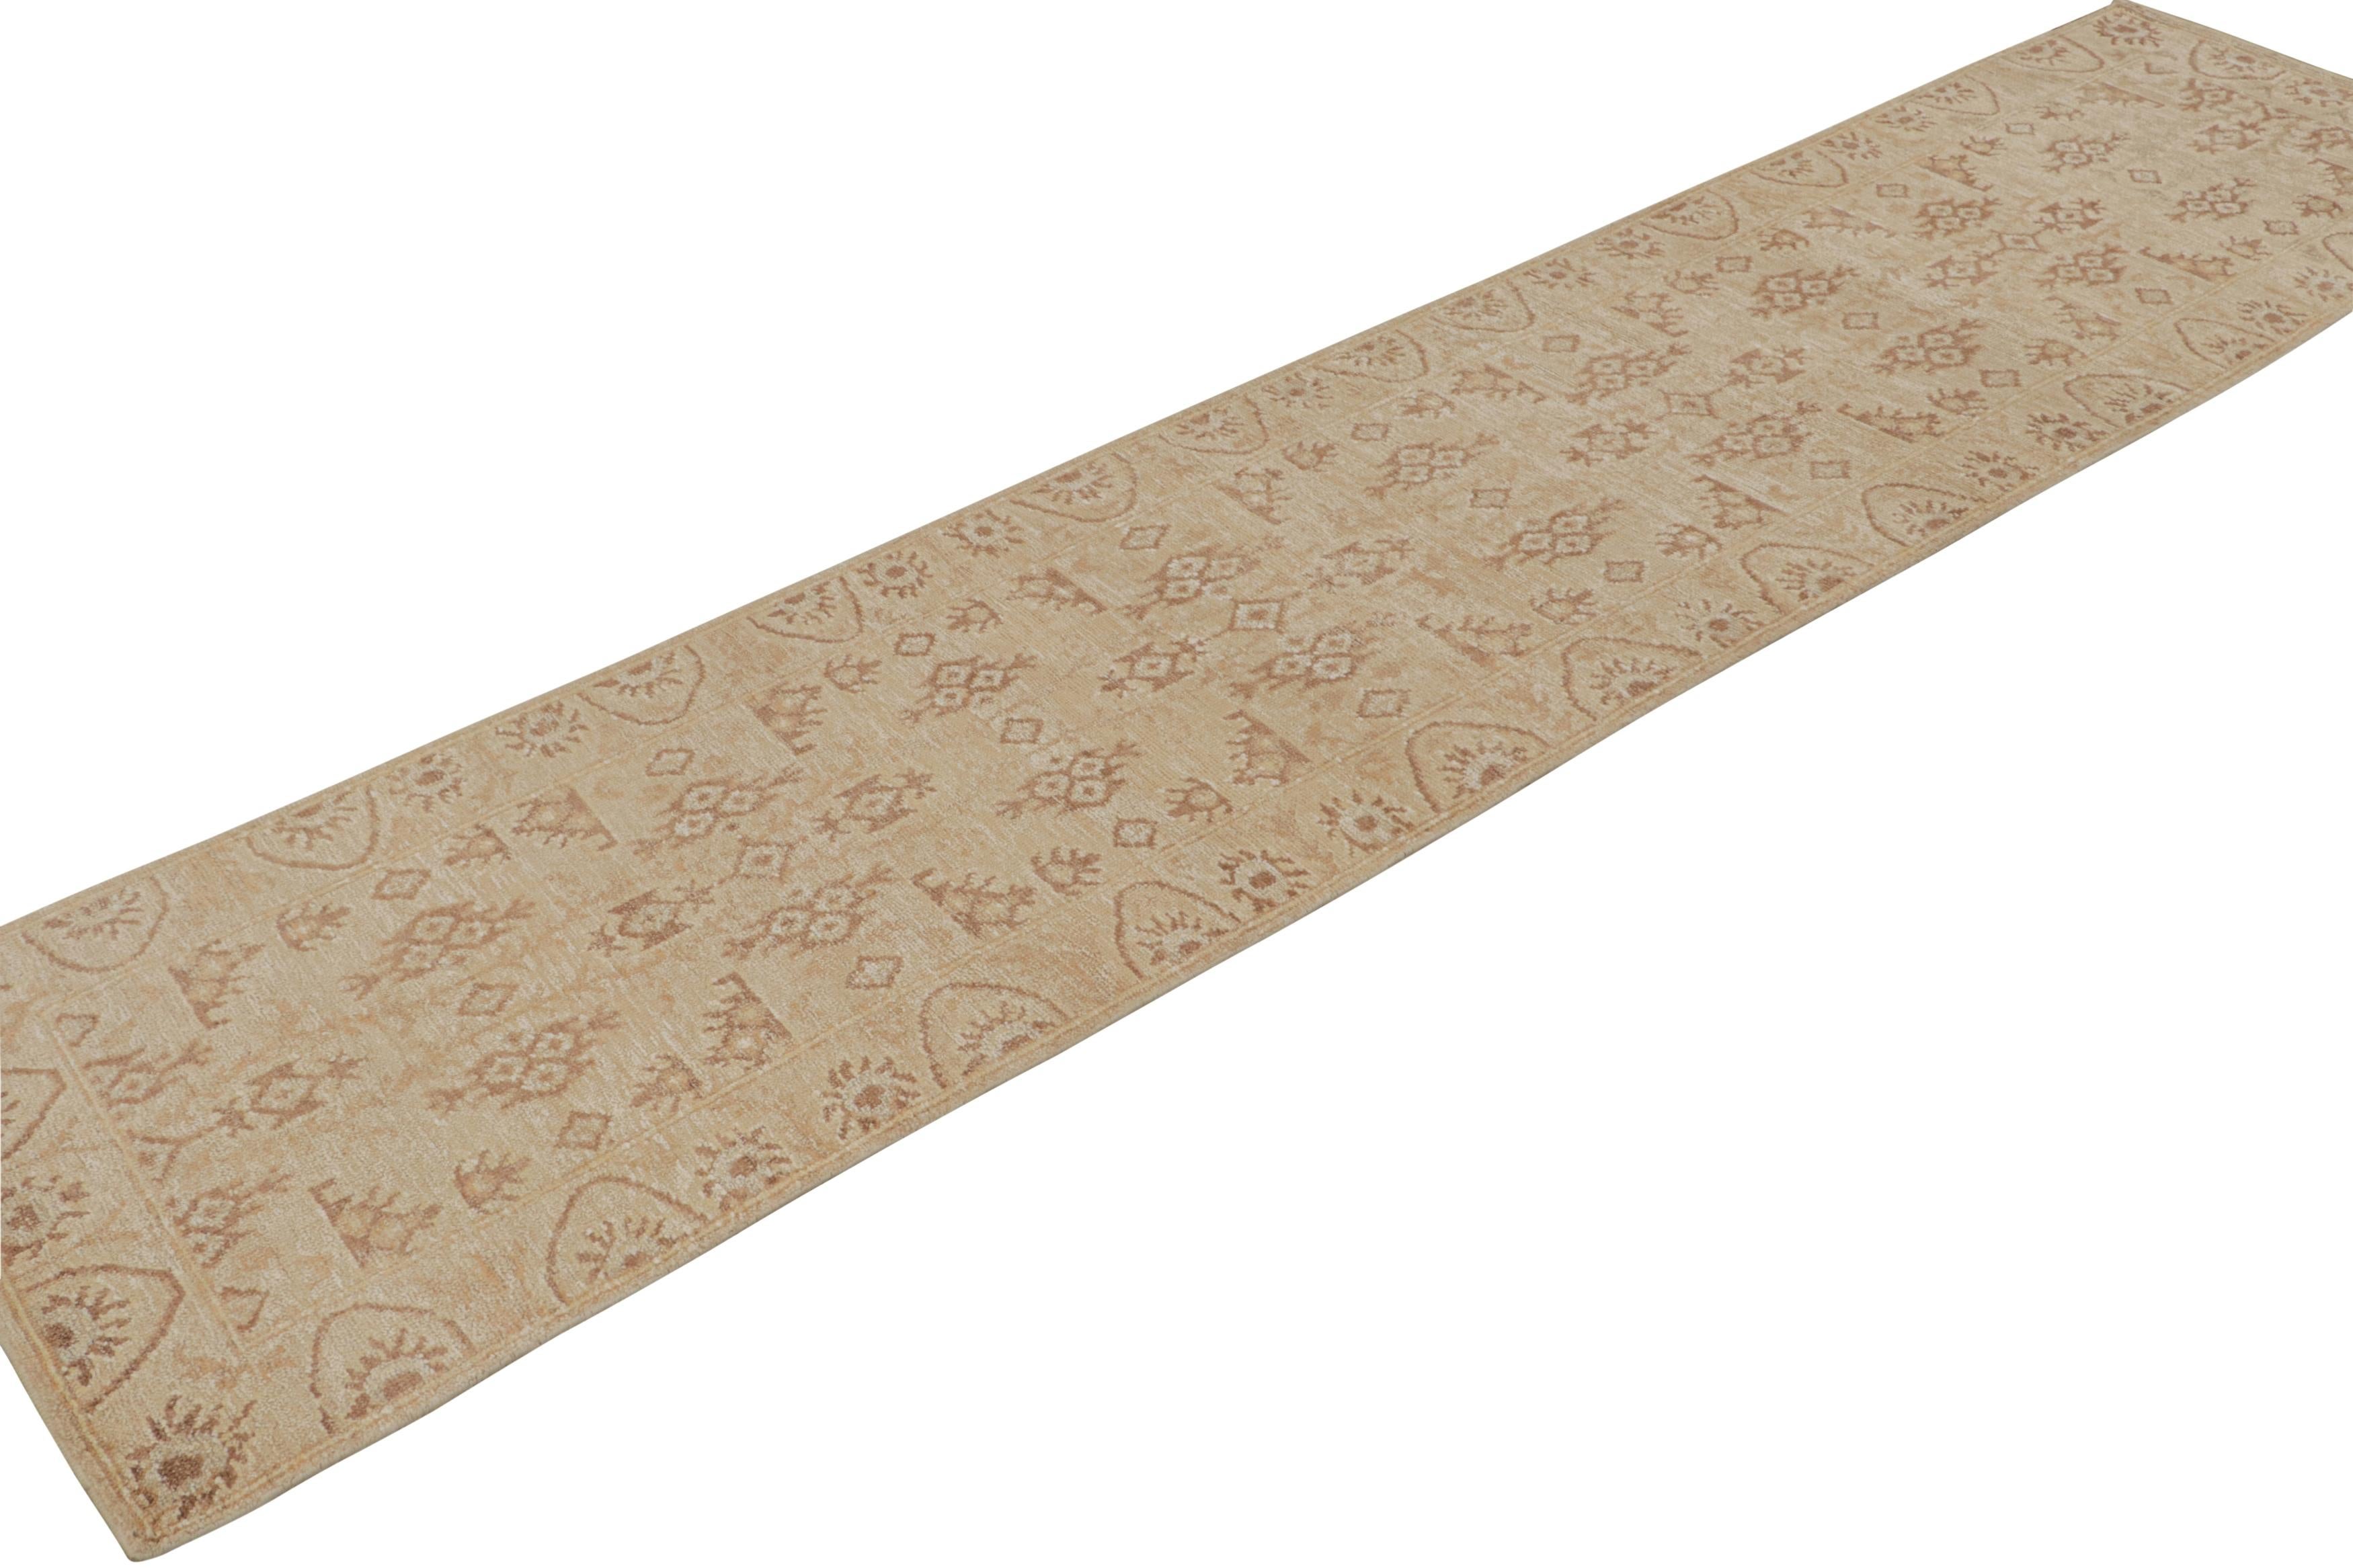 Handgeknüpft aus Wolle und Seide, ein 3x14 Stück aus unserer neuen Teppichlinie in dieser von antiken Oushak-Teppichen inspirierten Kollektion.

Über das Design: 

Dieses Stück ist mit einem floralen Muster in Beige und Braun versehen. Der Teppich